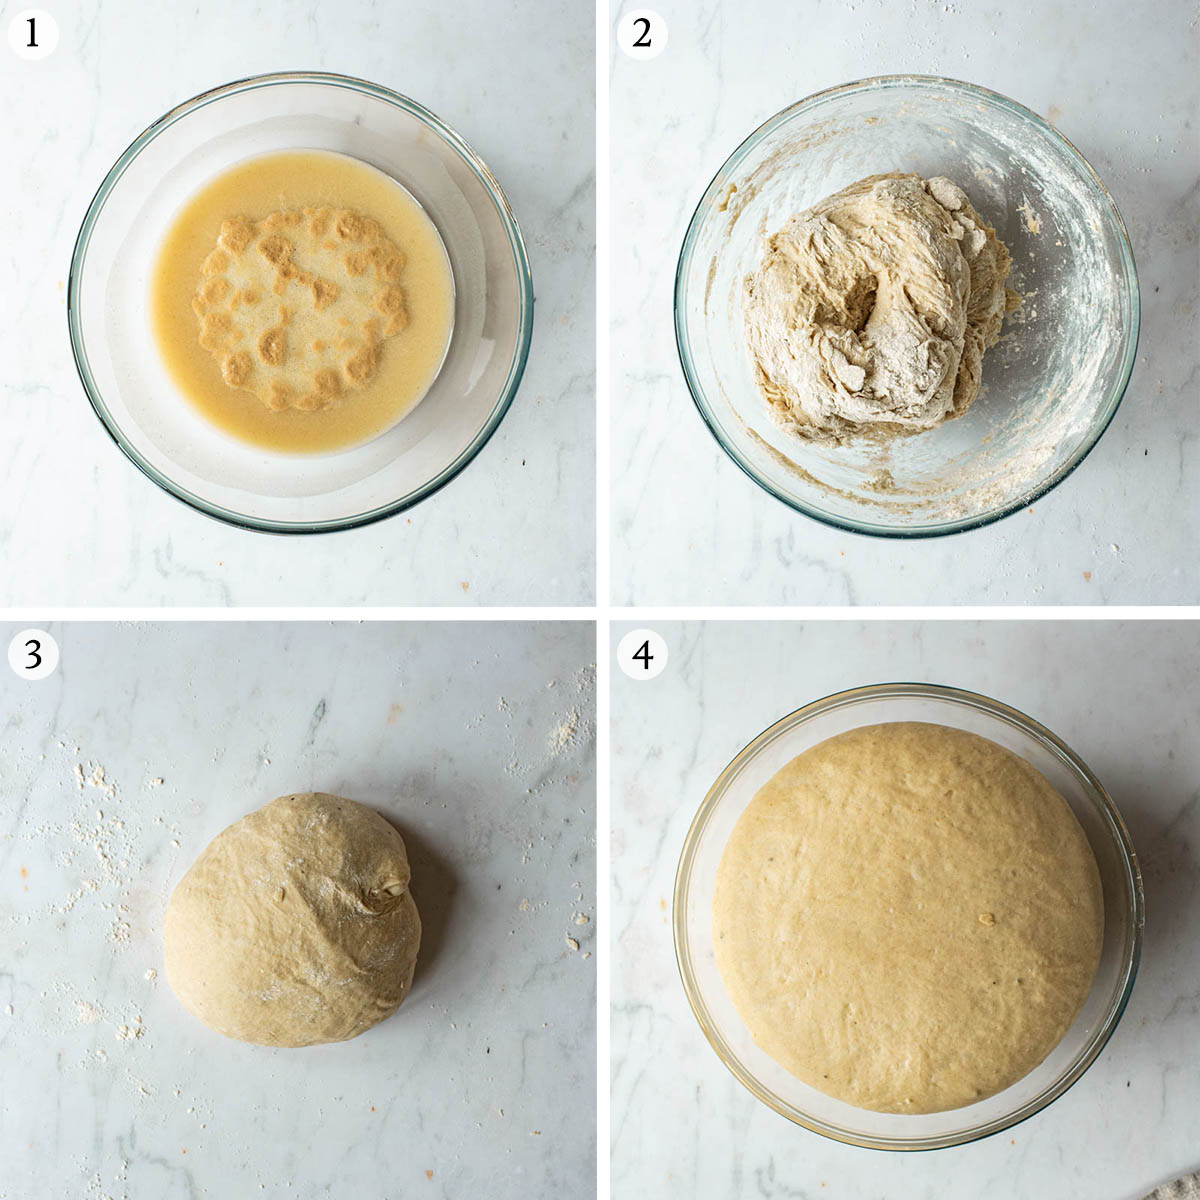 Cardamom buns steps 1 to 4.